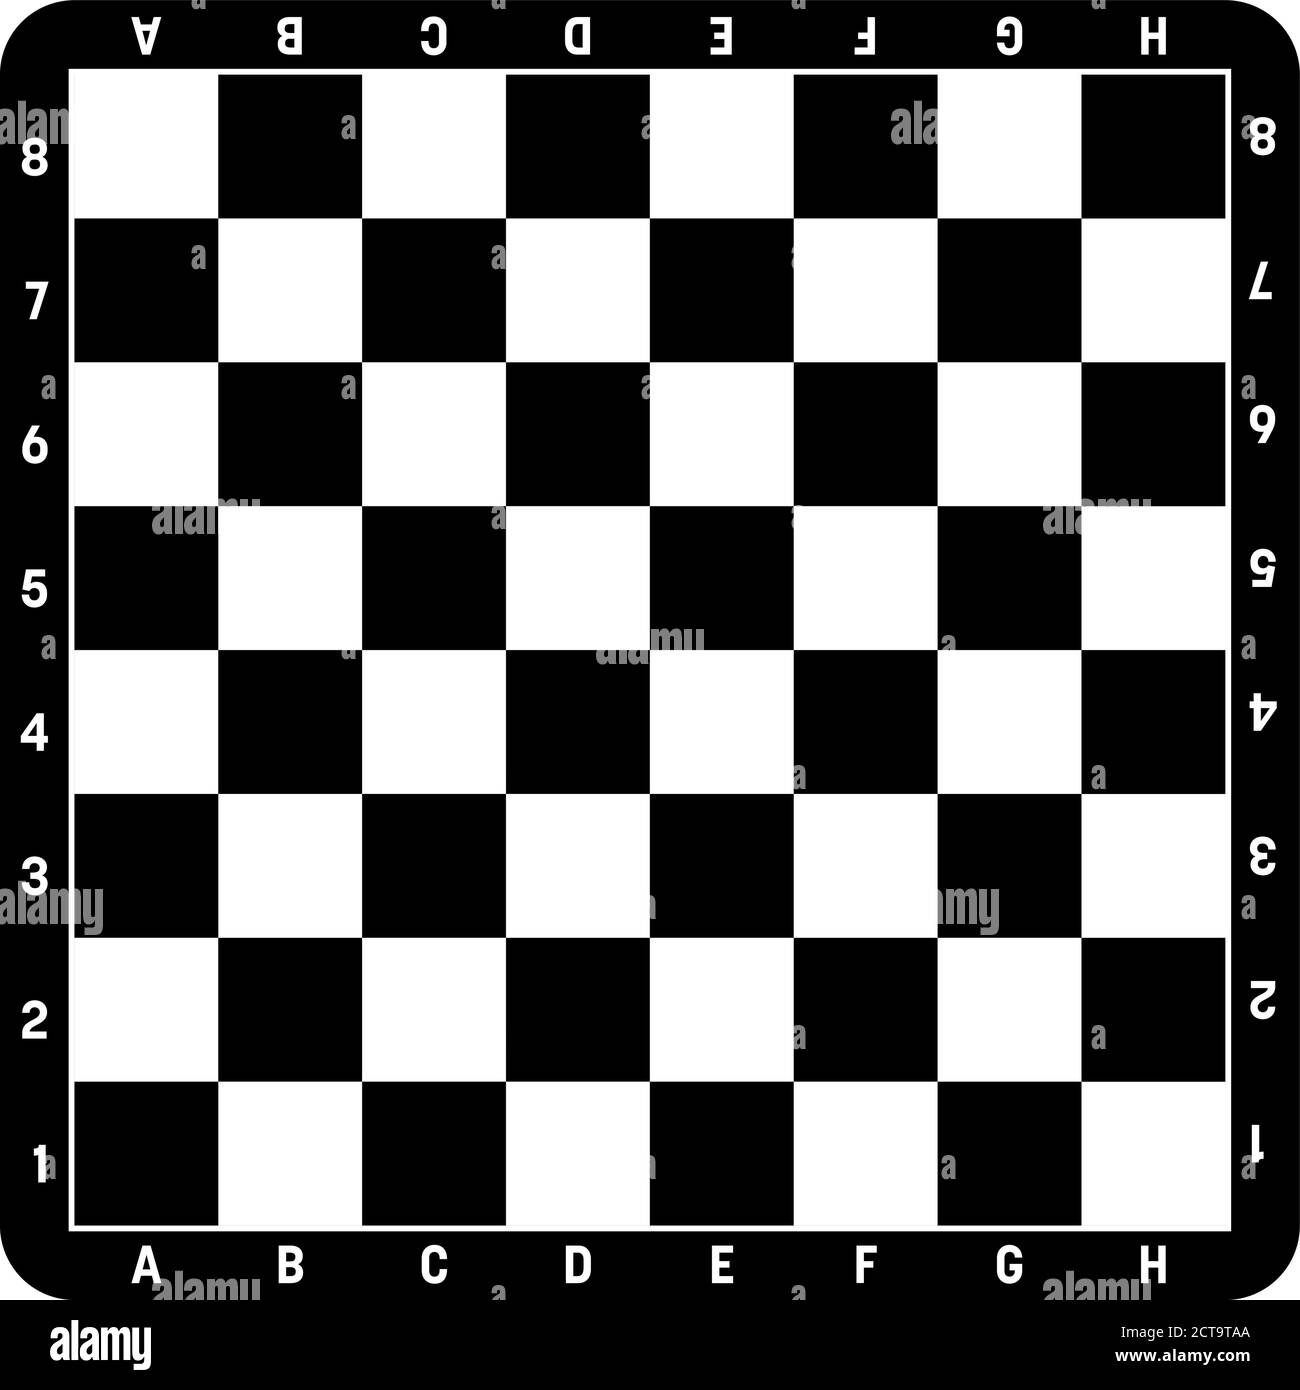 Tablero de ajedrez en blanco y negro. Juego de mesa para el ocio o deporte de ajedrez. Ilustración vectorial. Ilustración del Vector